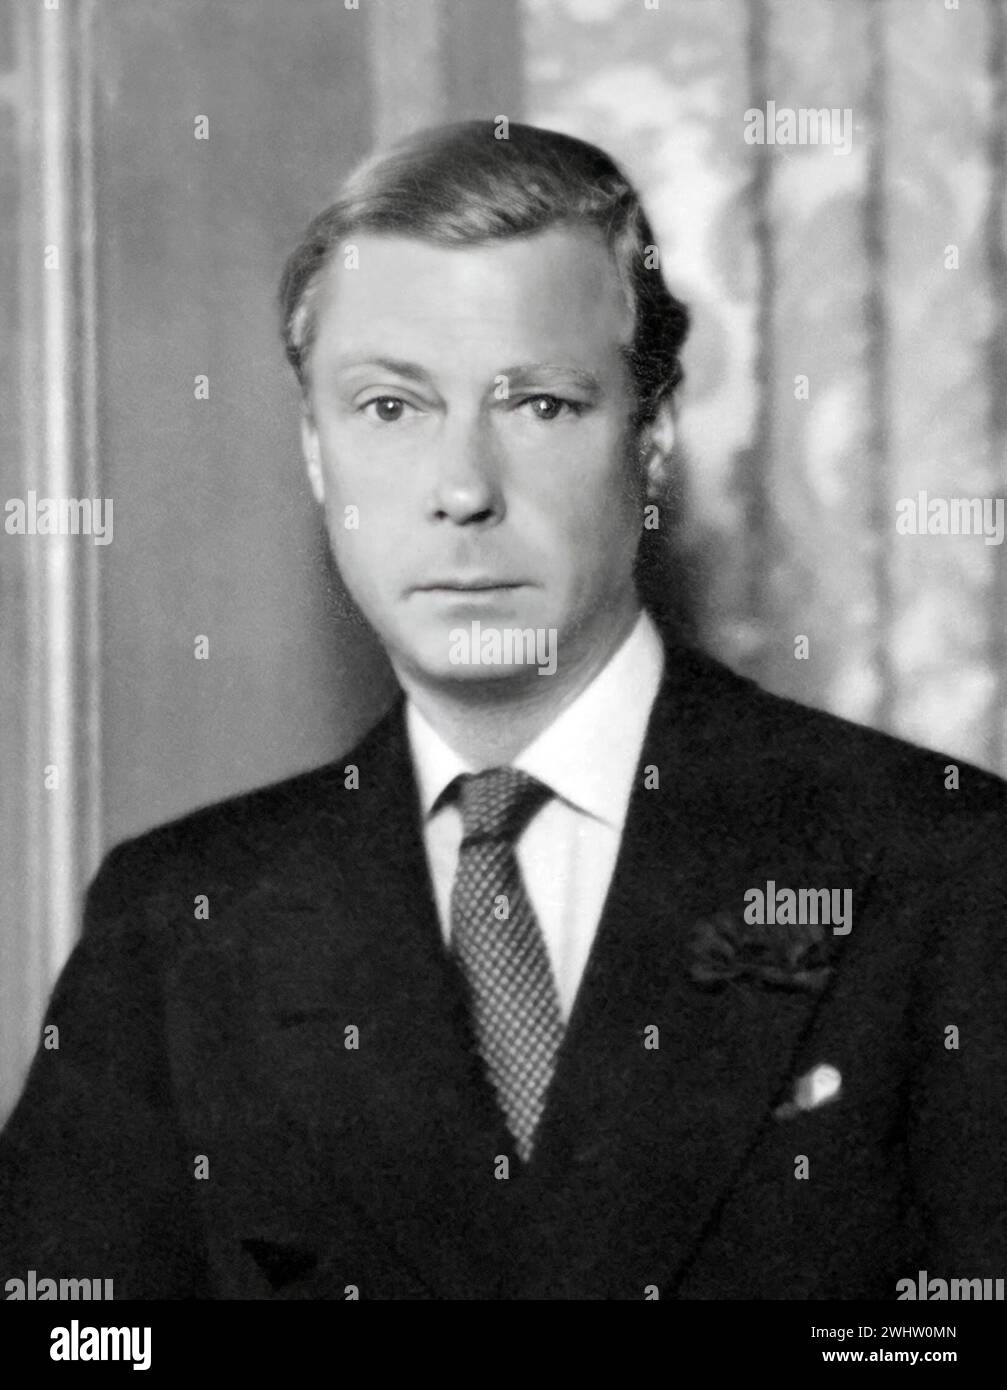 Duc de Windsor. Portrait du roi Édouard VIII, duc de Windsor (1894-1972), v. 1934 Banque D'Images